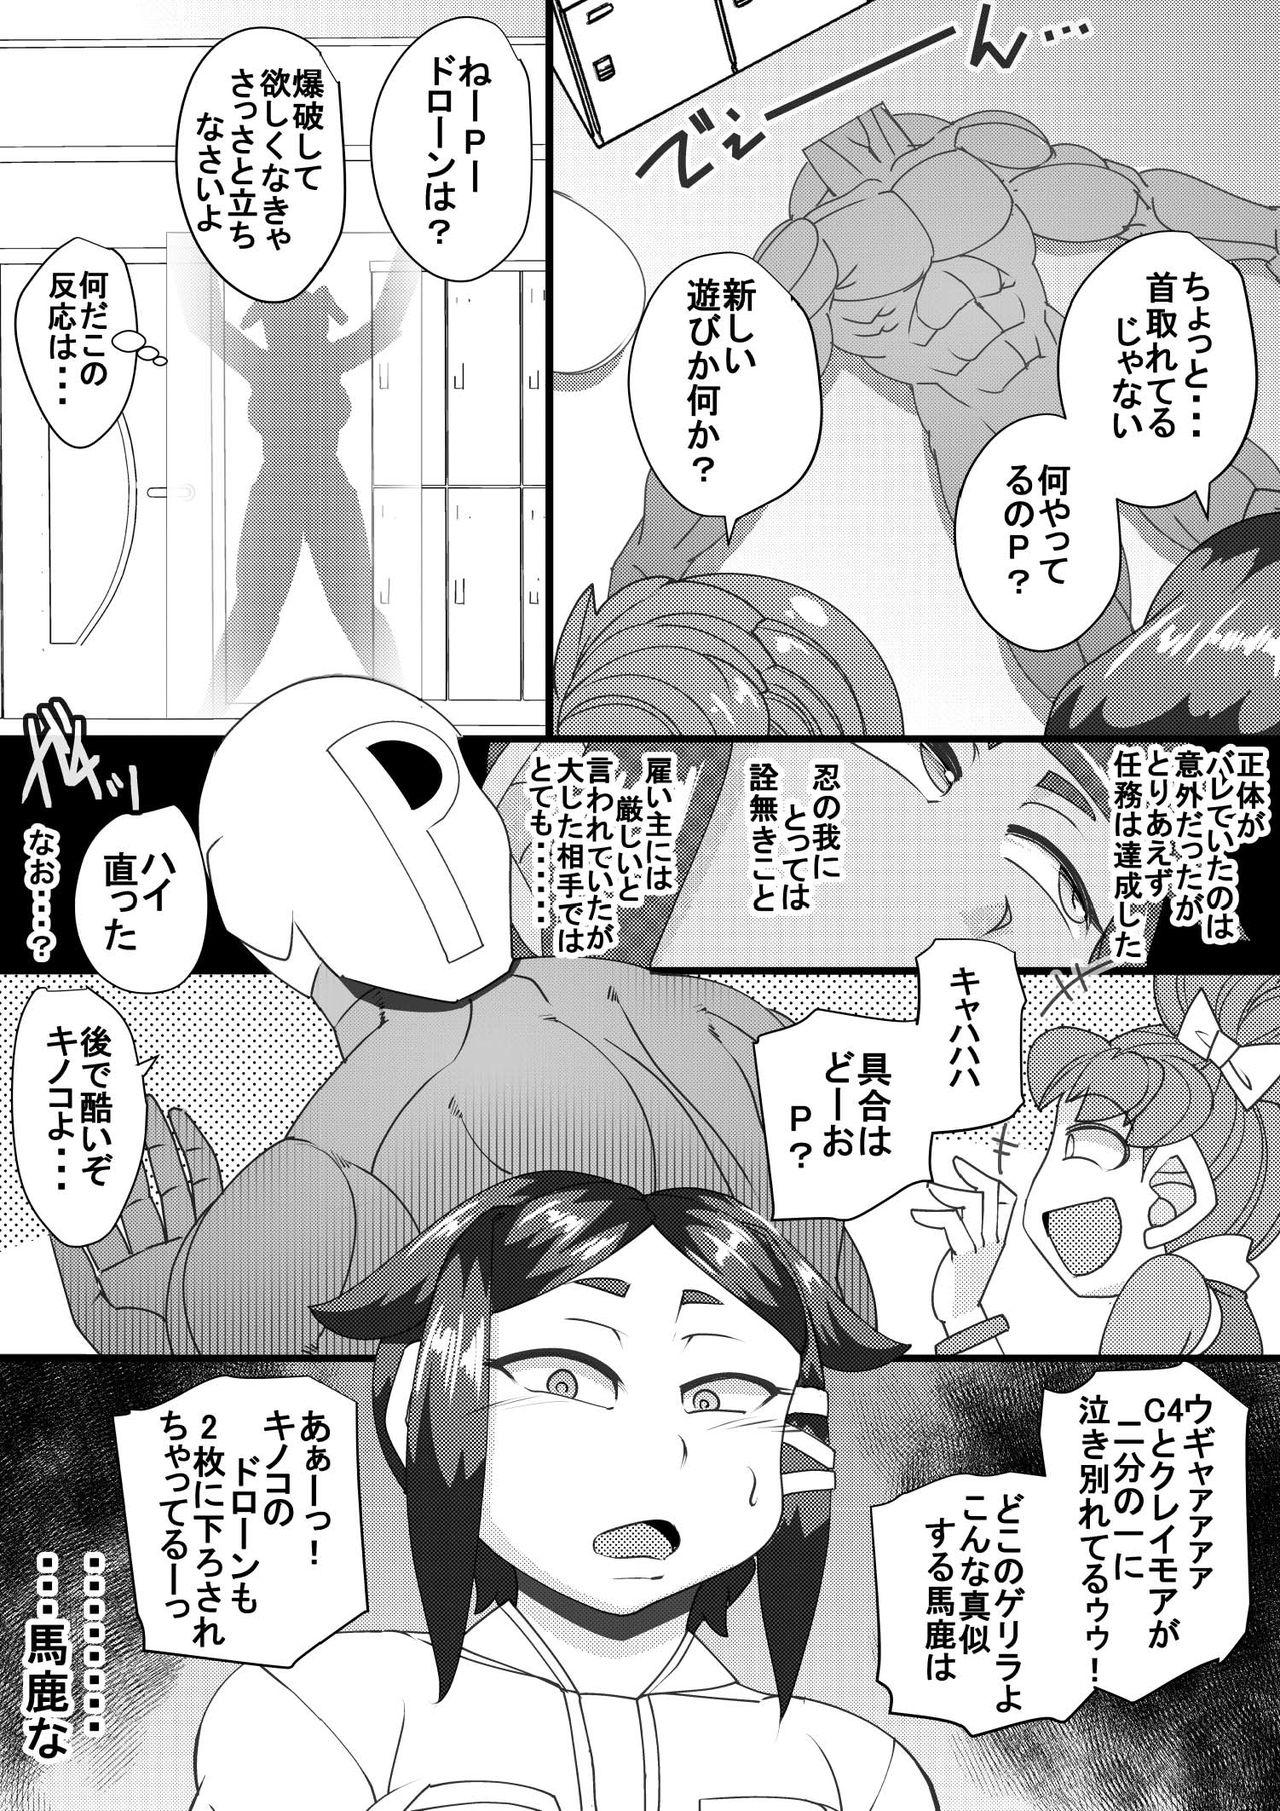 Footfetish Haramachi 6 - Original Para - Page 5